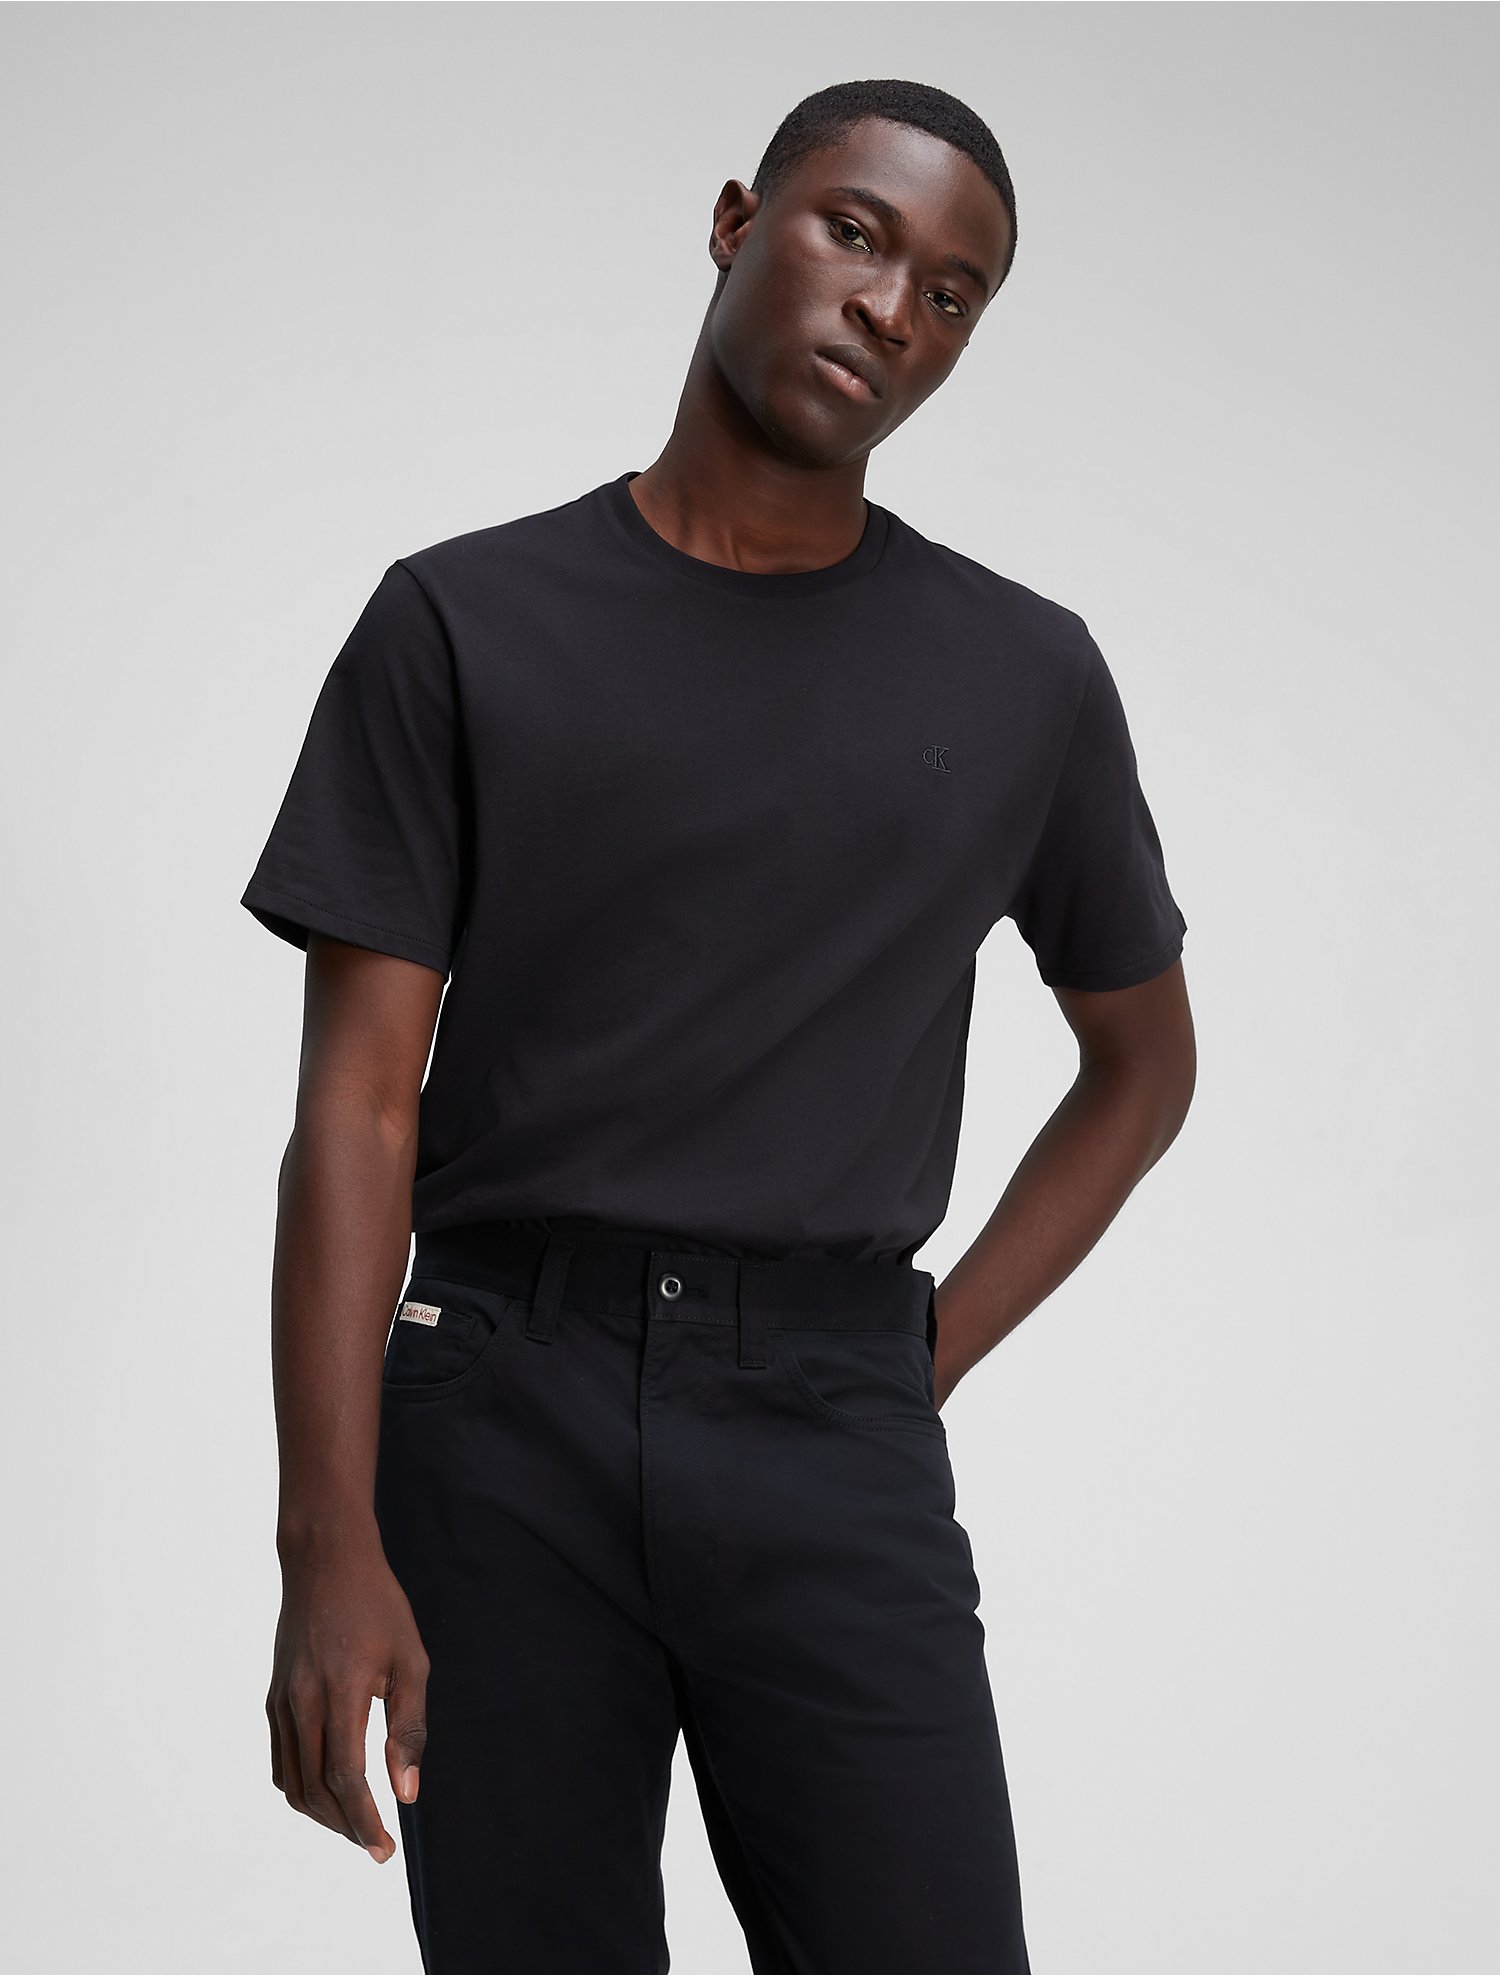 Tシャツ/カットソー(半袖/袖なし) 【Sサイズ】PALACE PERFORMANCE T-SHIRT BLACK